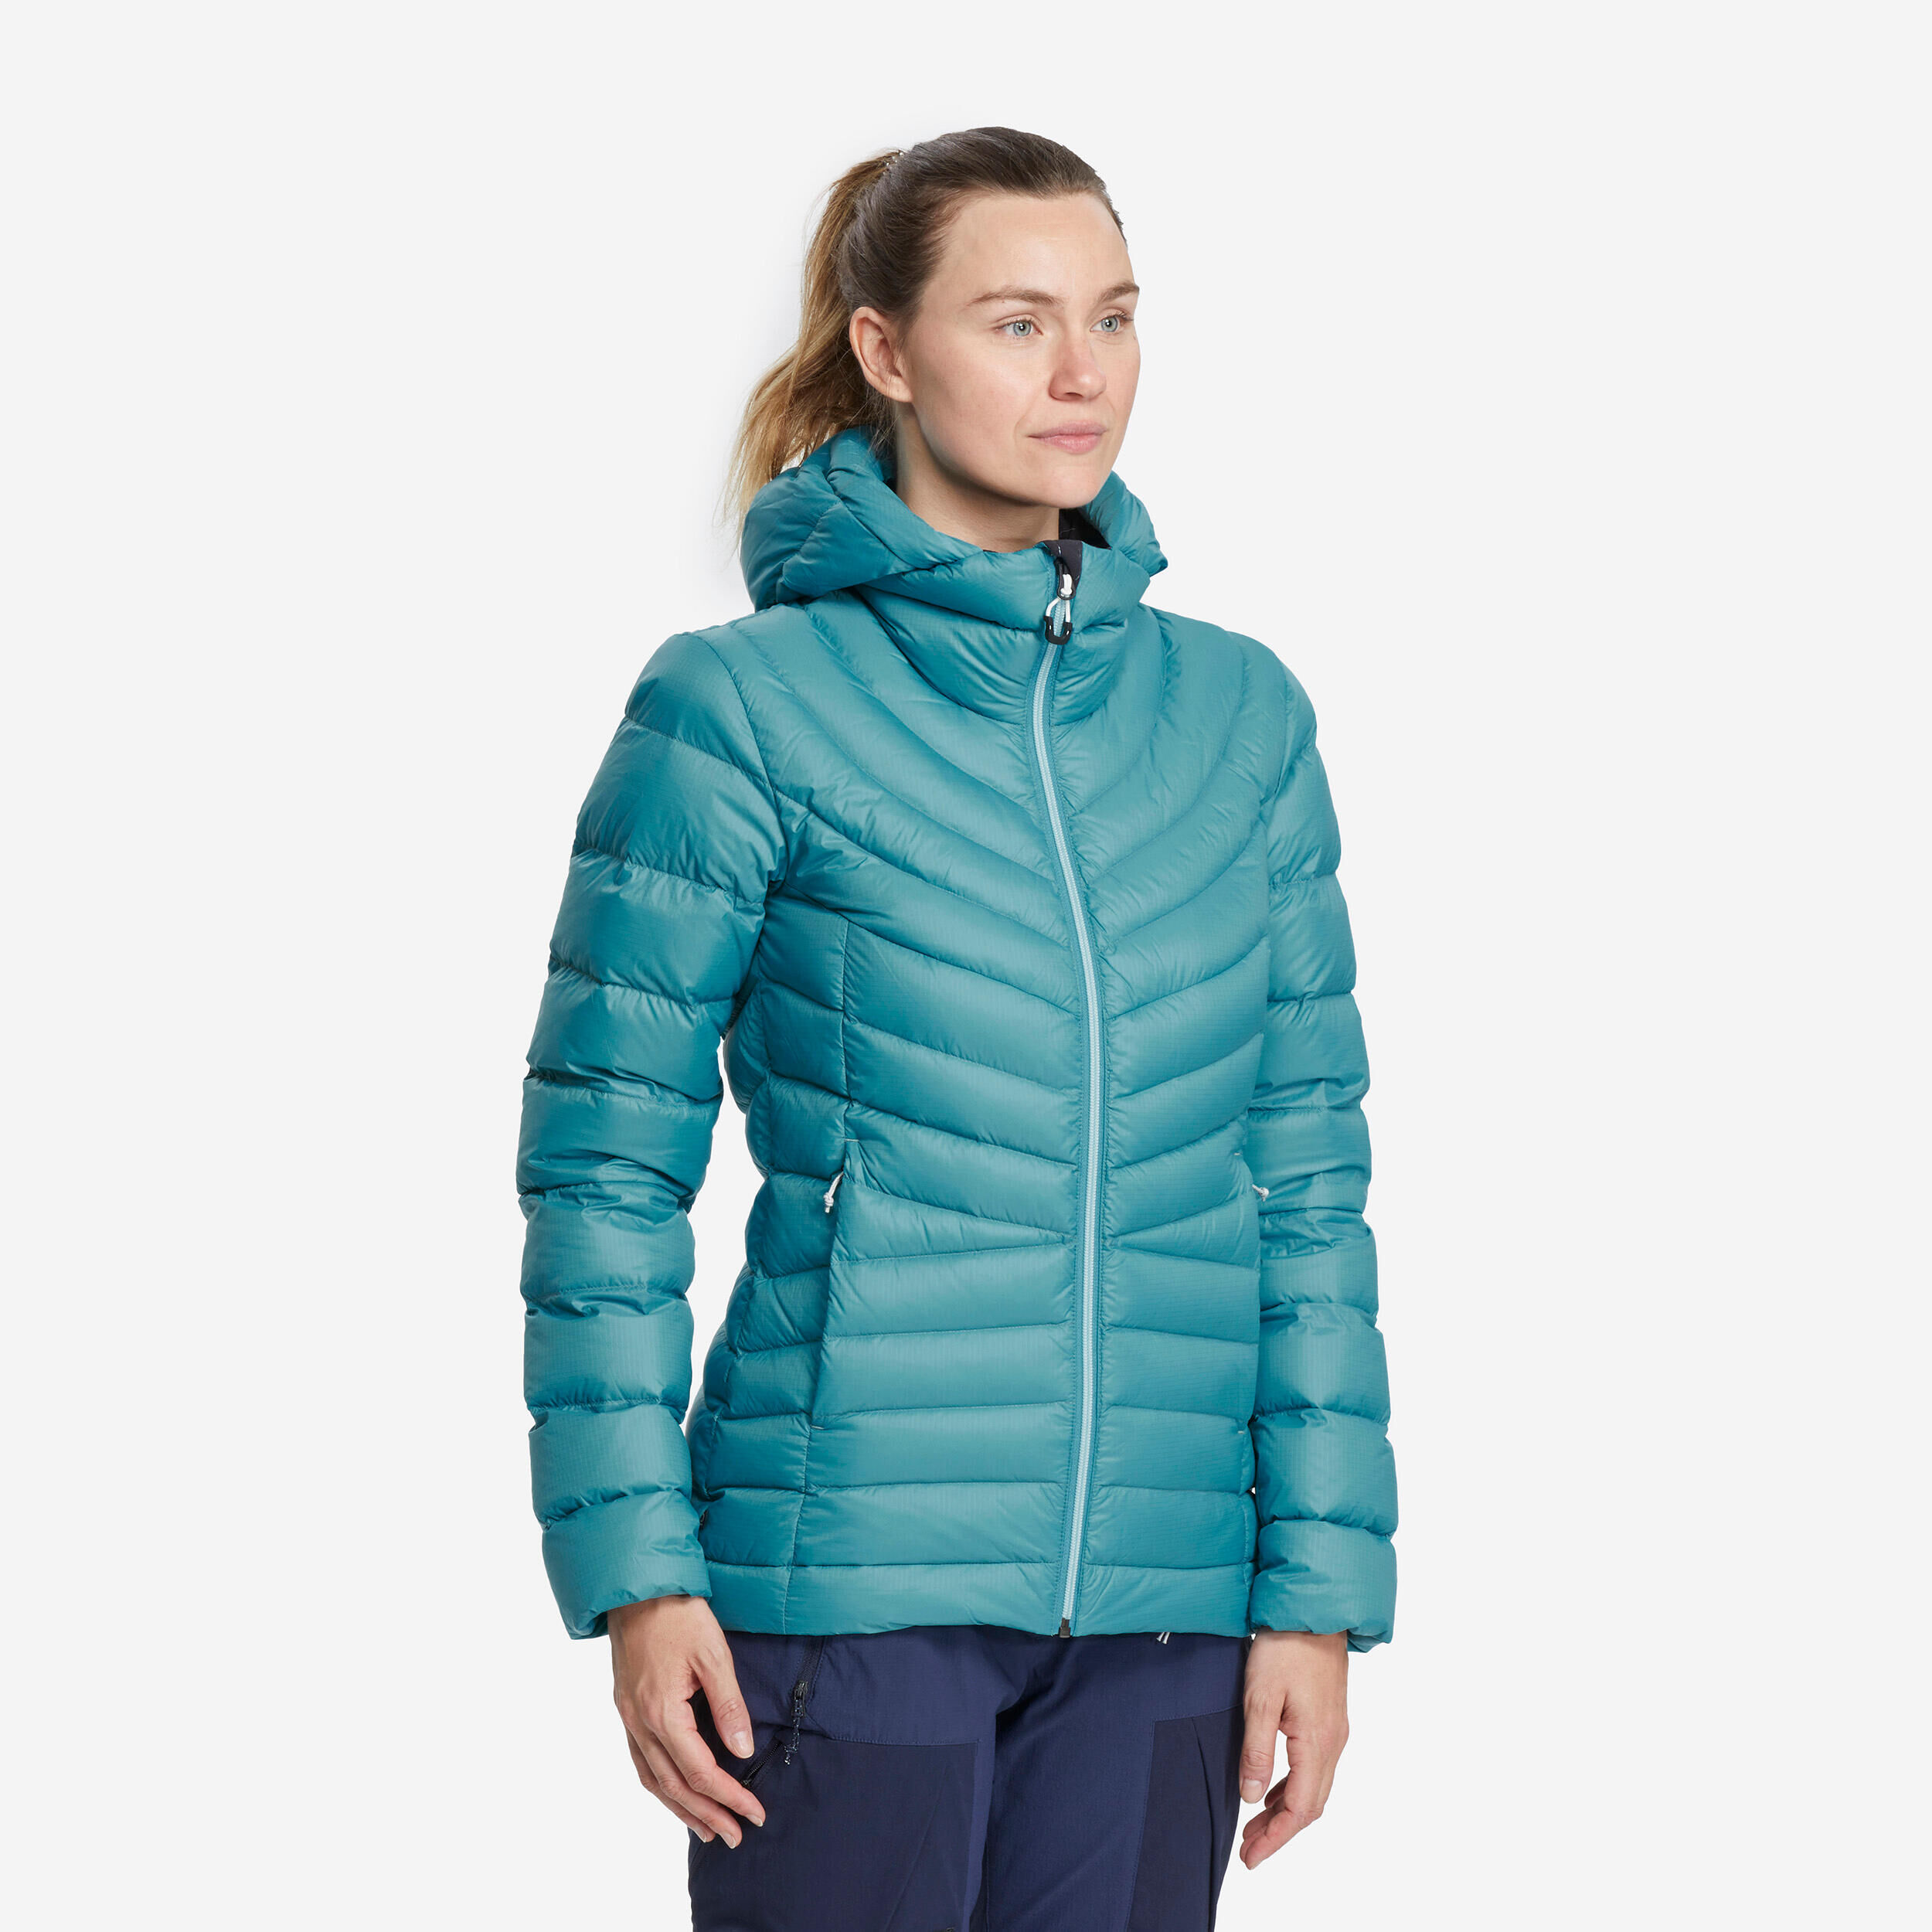 FORCLAZ Women’s mountain trekking hooded down jacket - MT500 -10°C